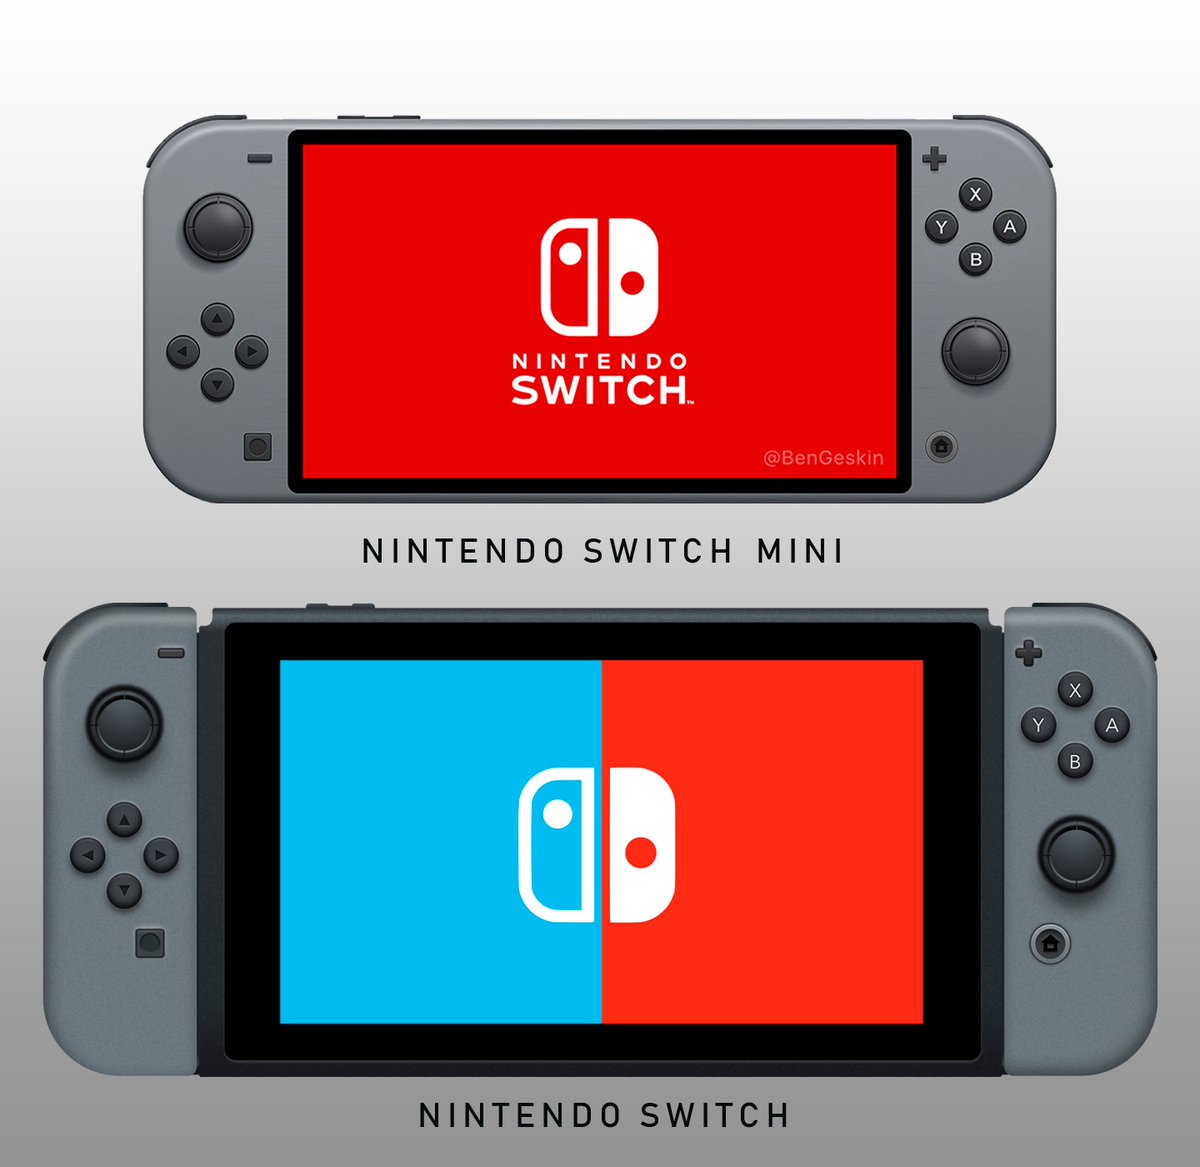 ｢Nintendo Switch Mini｣はこんな感じ?? − リーク情報をもとに作成されたレンダリング画像